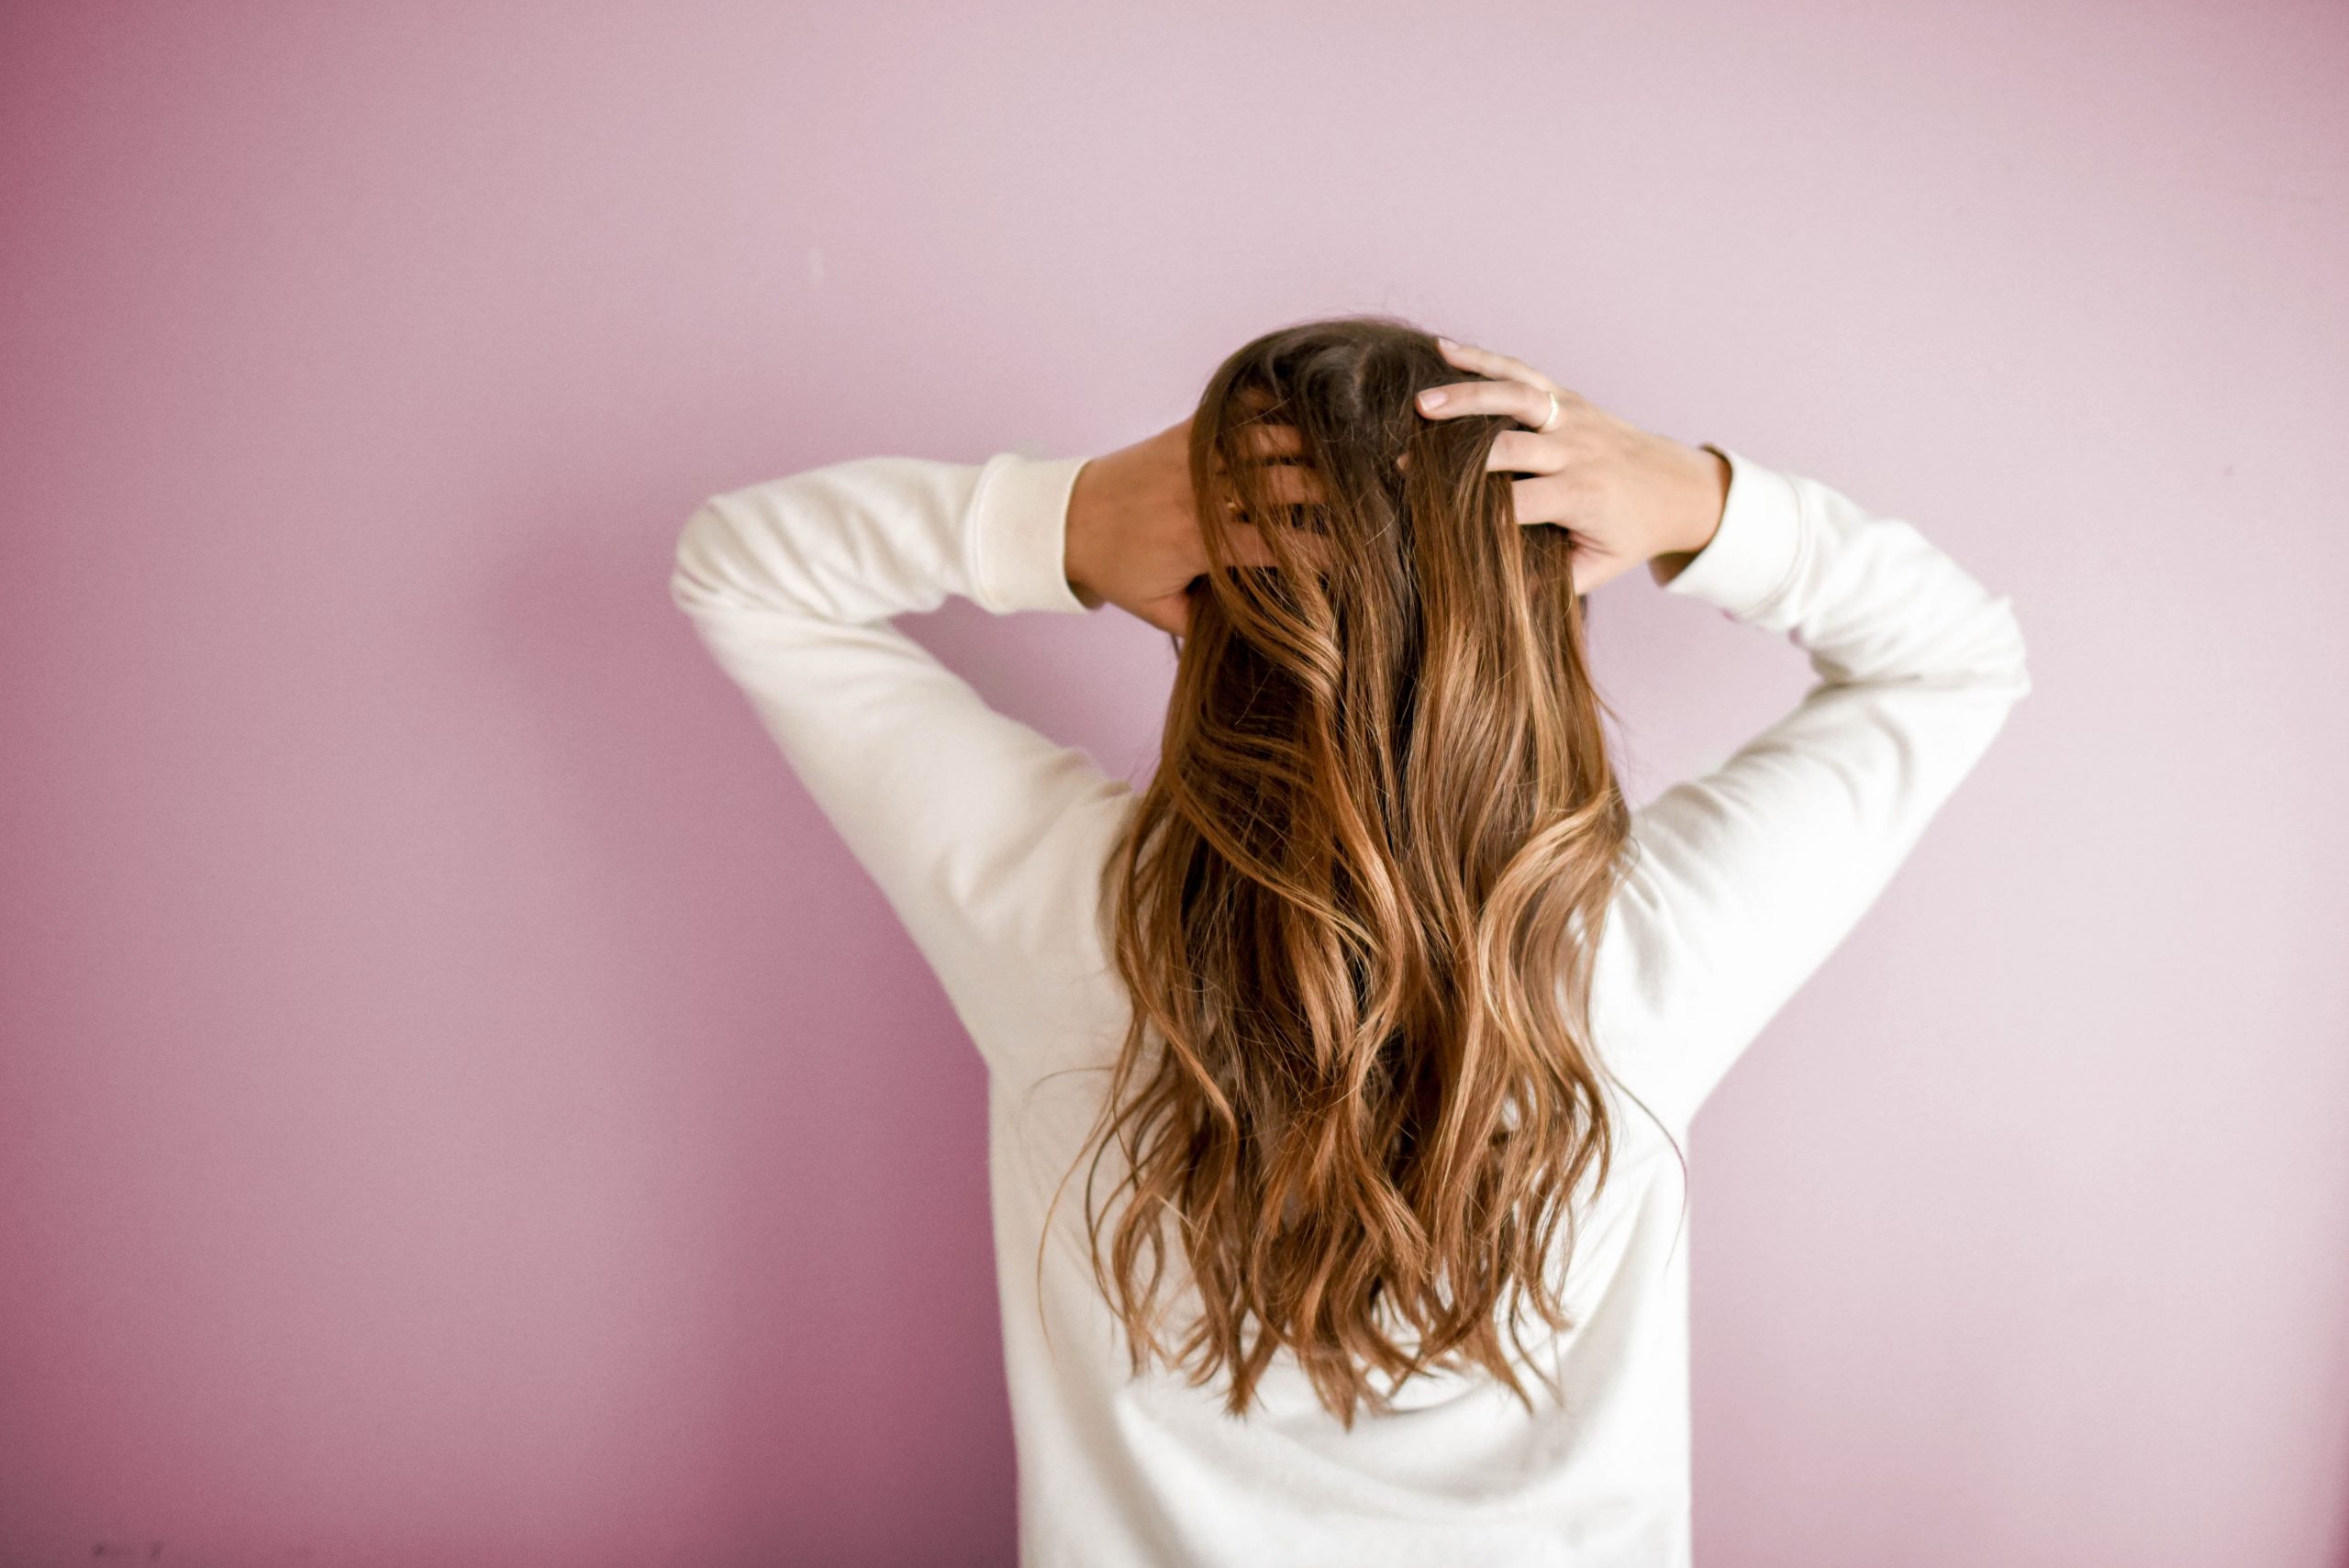 Hair fall home remedy: झड़ते बालों को कैसे रोकें? घर पर बने ये 3 तेल साबित होंगे रामबाण उपाय